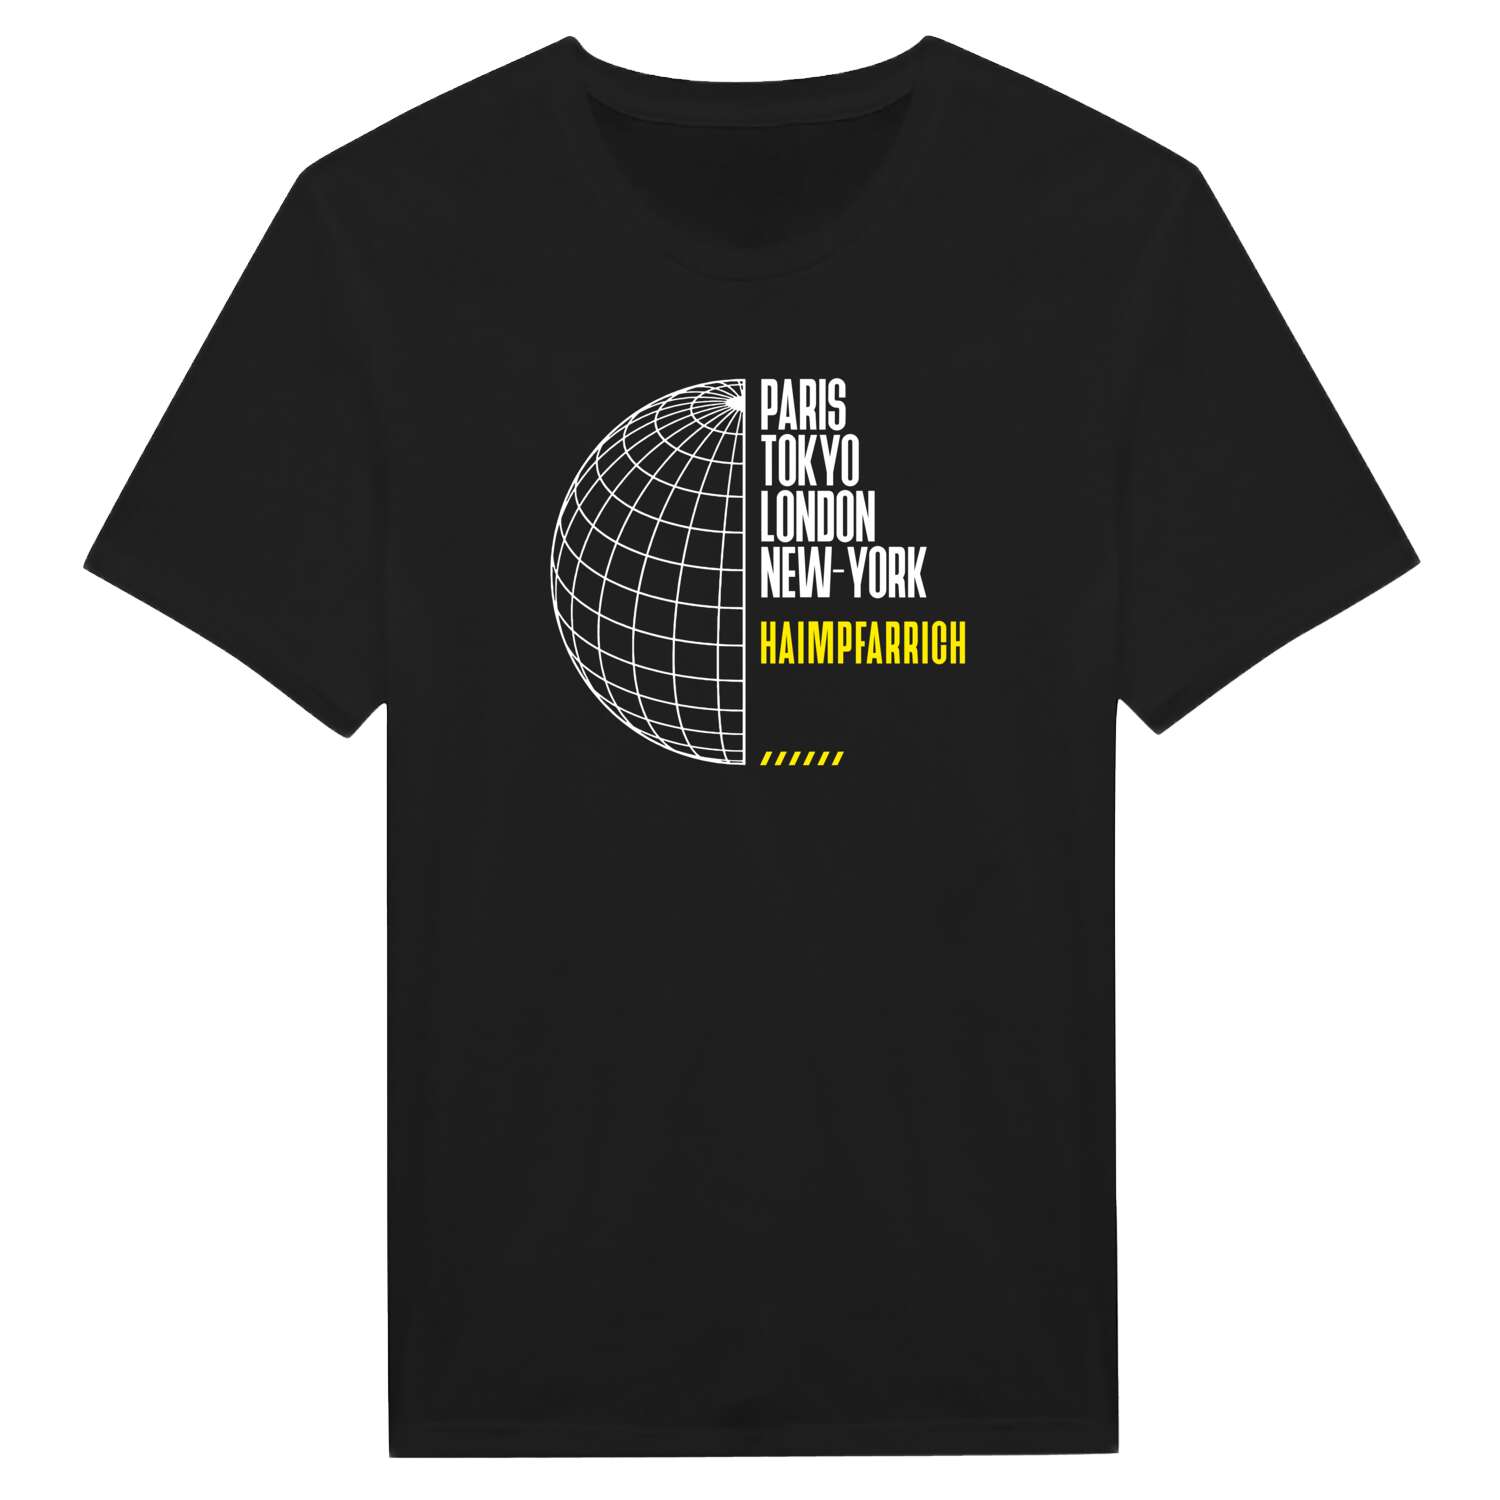 Haimpfarrich T-Shirt »Paris Tokyo London«